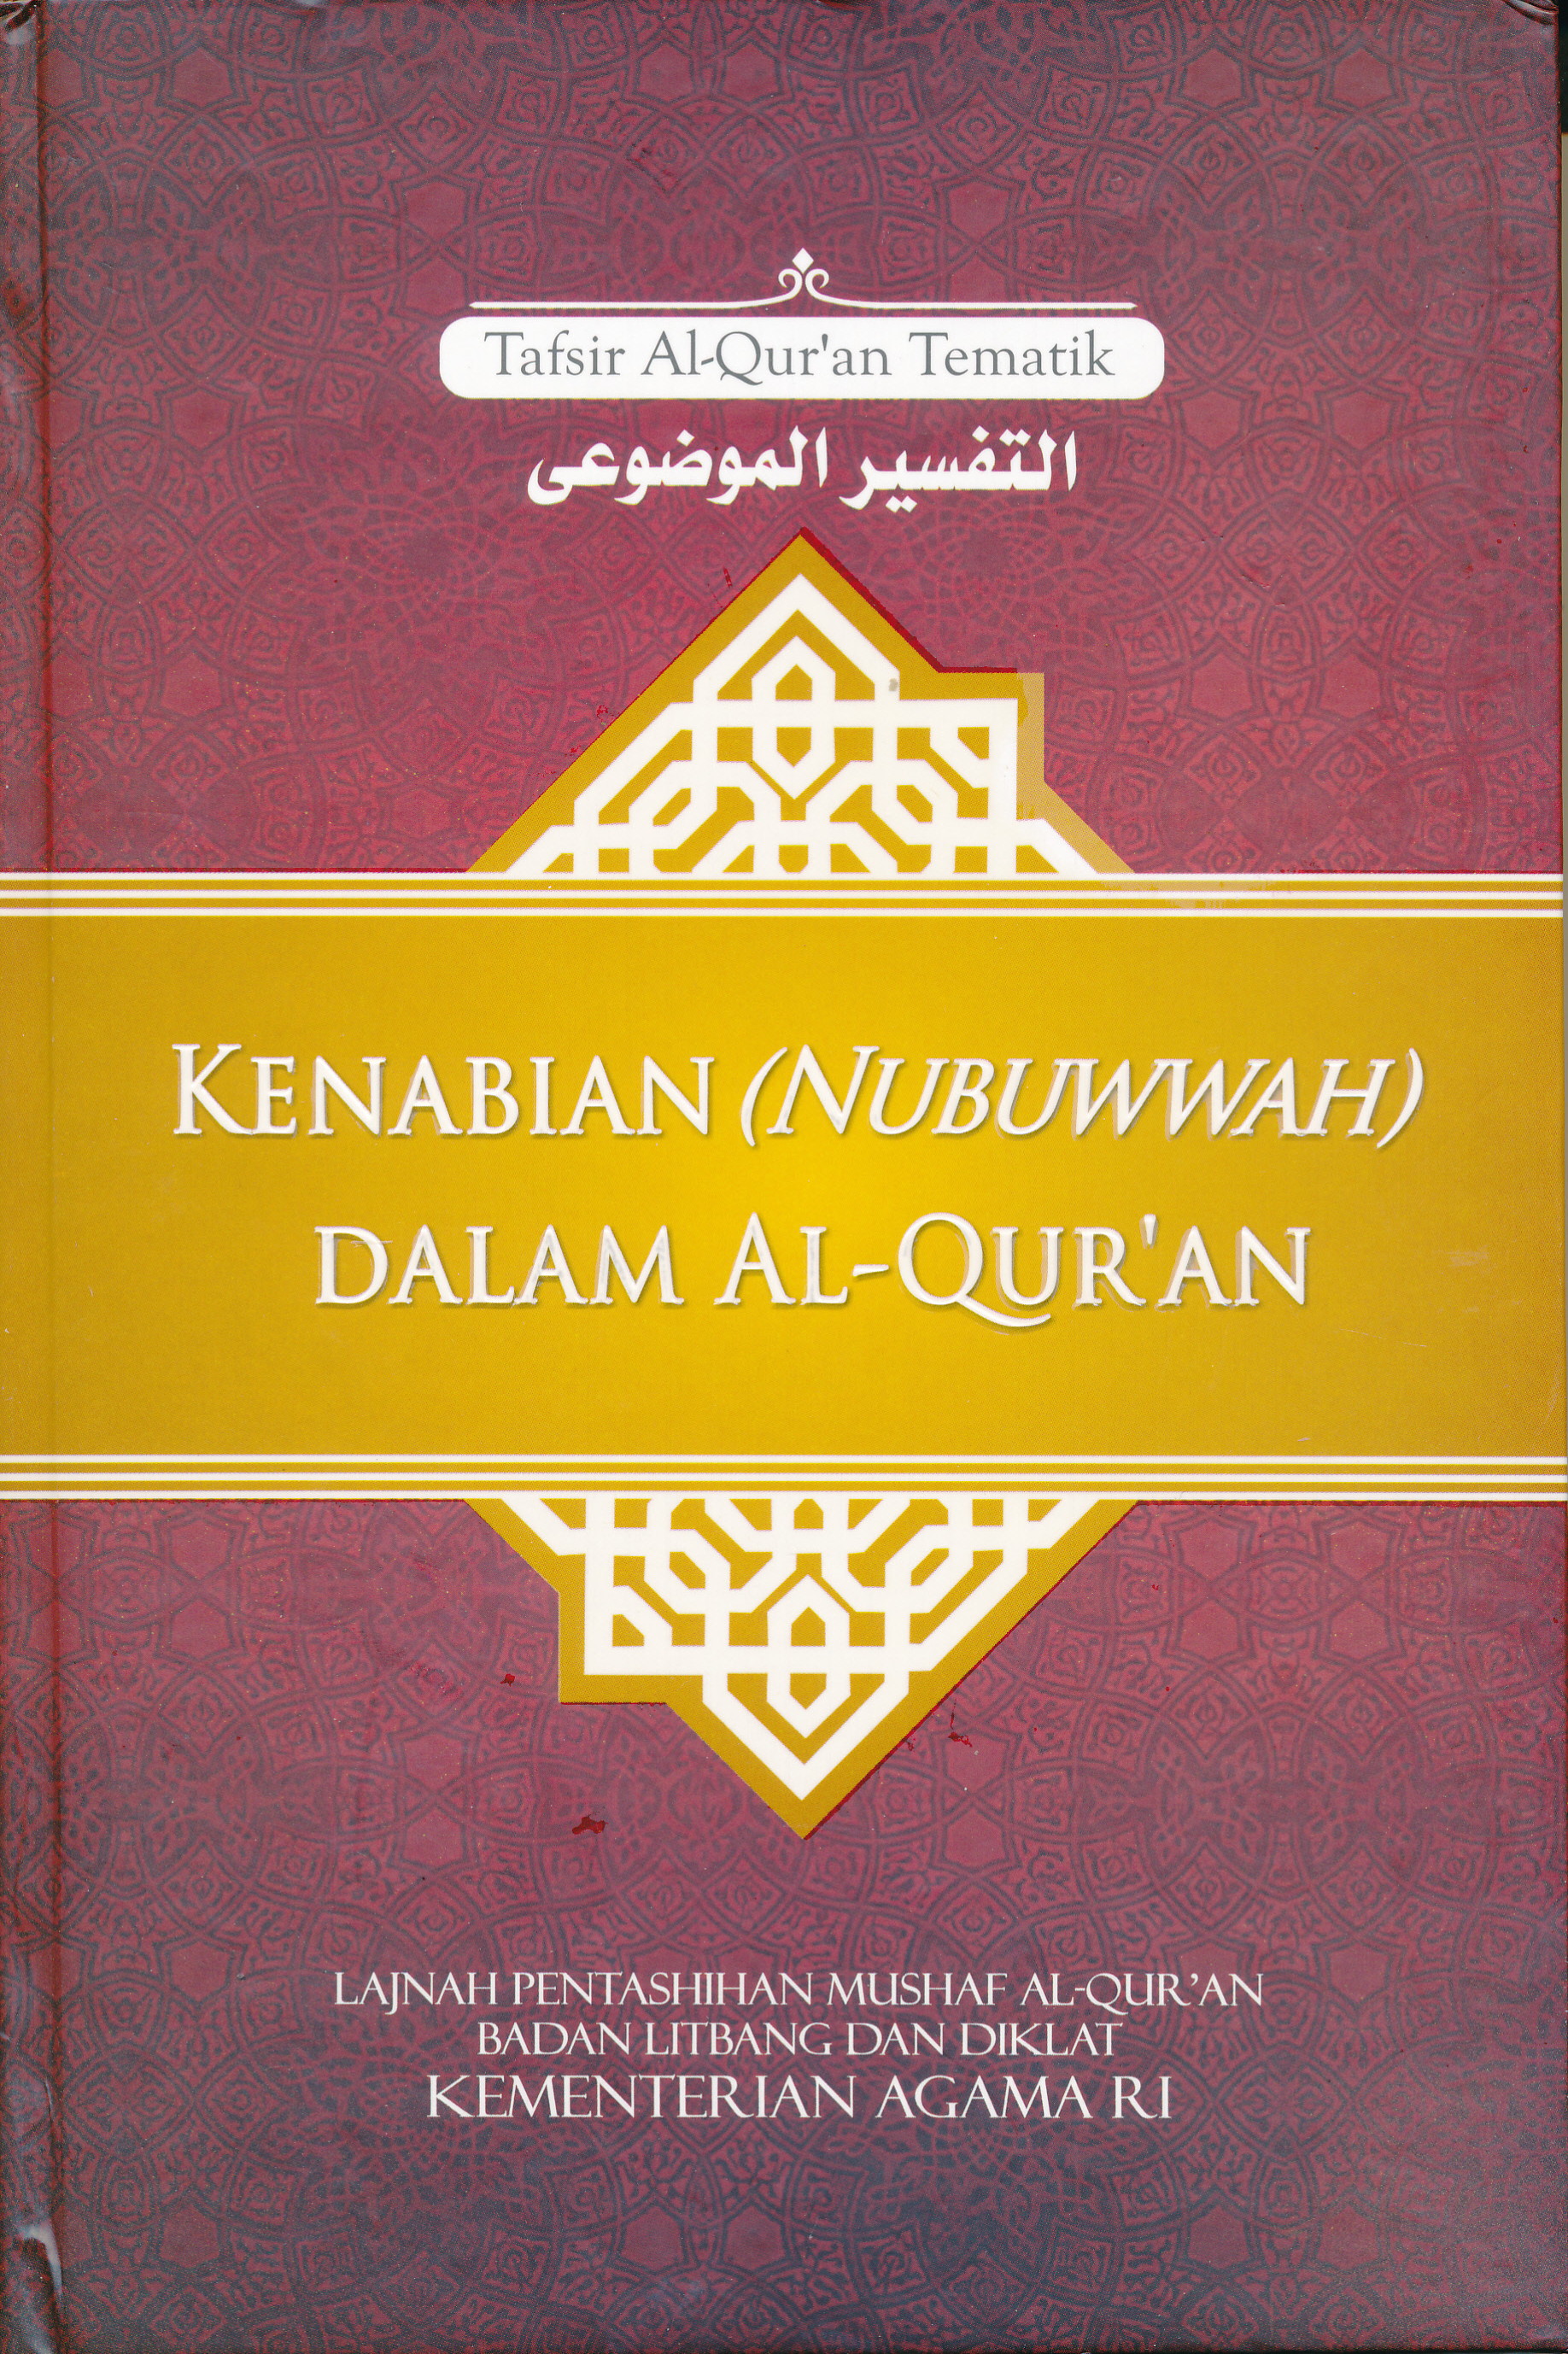 KENABIAN (NUBUWWAH) DALAM AL-QURAN